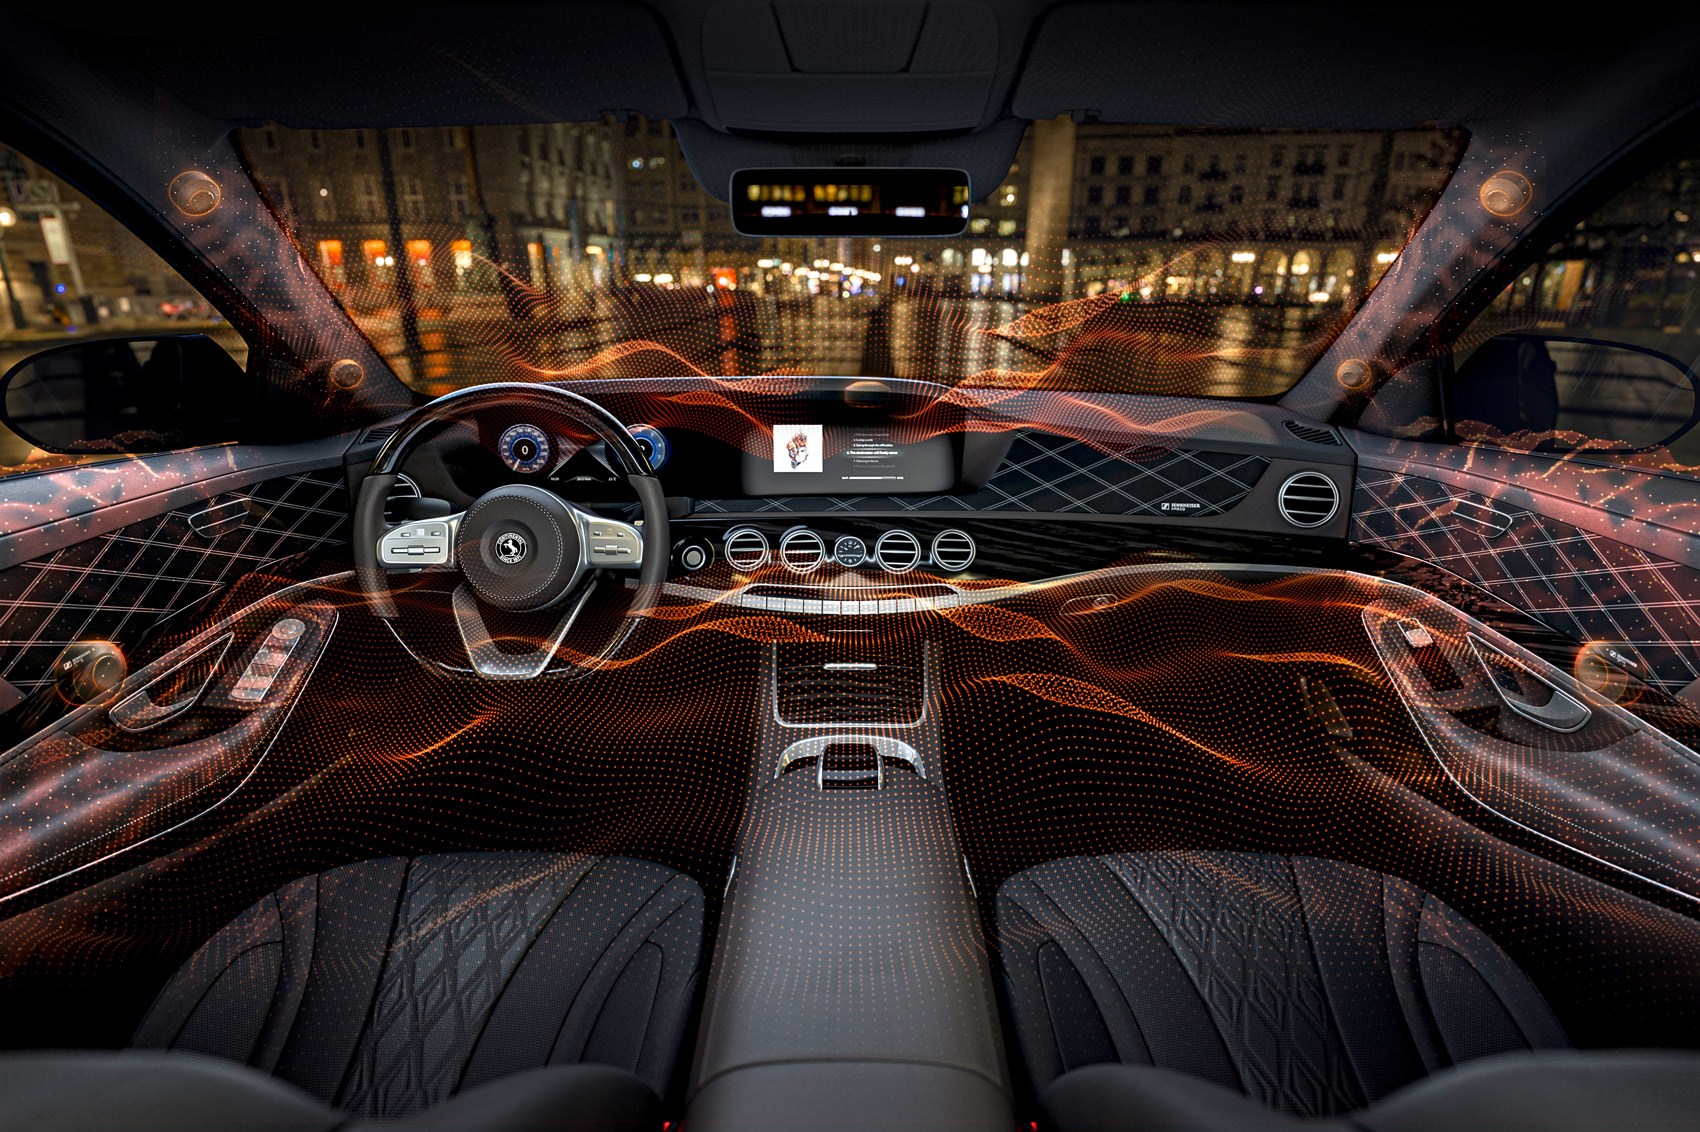 Blijkbaar Harmonisch rijst Active and speakerless: the future of in-car audio | CAR Magazine